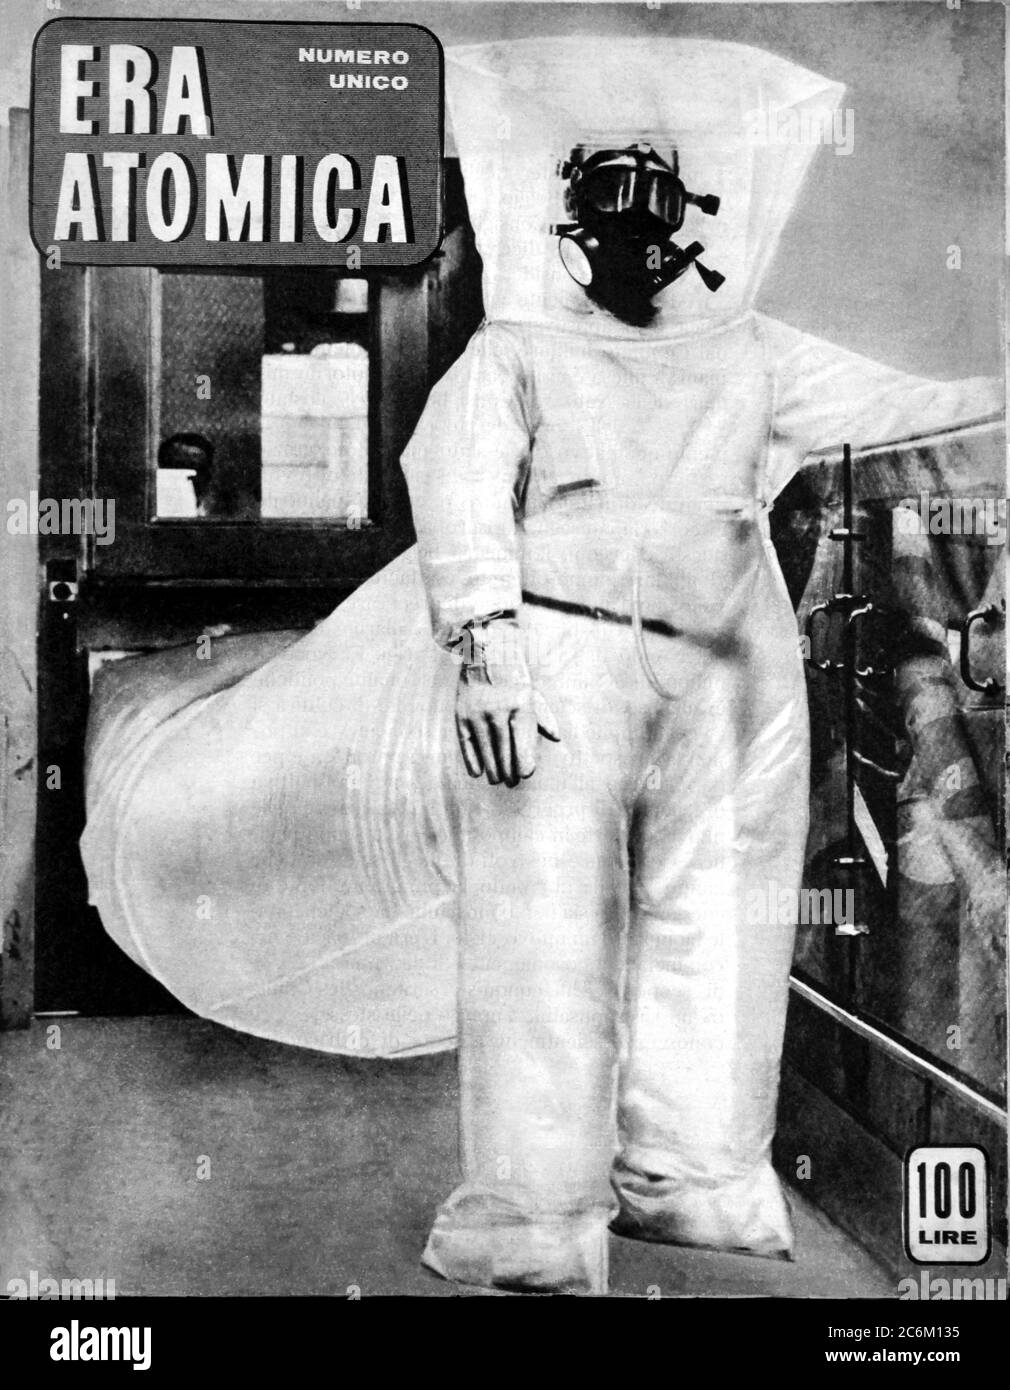 1955 , ITALIA : copertina della rivista italiana era ATOMICA sull'ERA ATOMICA moderna della GUERRA FREDDA pubblicata dalla rivista comunista italiana il LAVORO (di CGIL Syndacate: Confederazione Generale Italiana del lavoro ) per il pacifismo e l'abbandono di qualsiasi uso di energia atomica per la guerra. - PACE - PACIFISMO - ENERGIA ATOMICA - ENERGIA - GUERRA FREDDA FREDDA - ATTENZIONE NUCLEARE - ARMI NUCLEARI - FUNGO atomico - radioattività Foto Stock